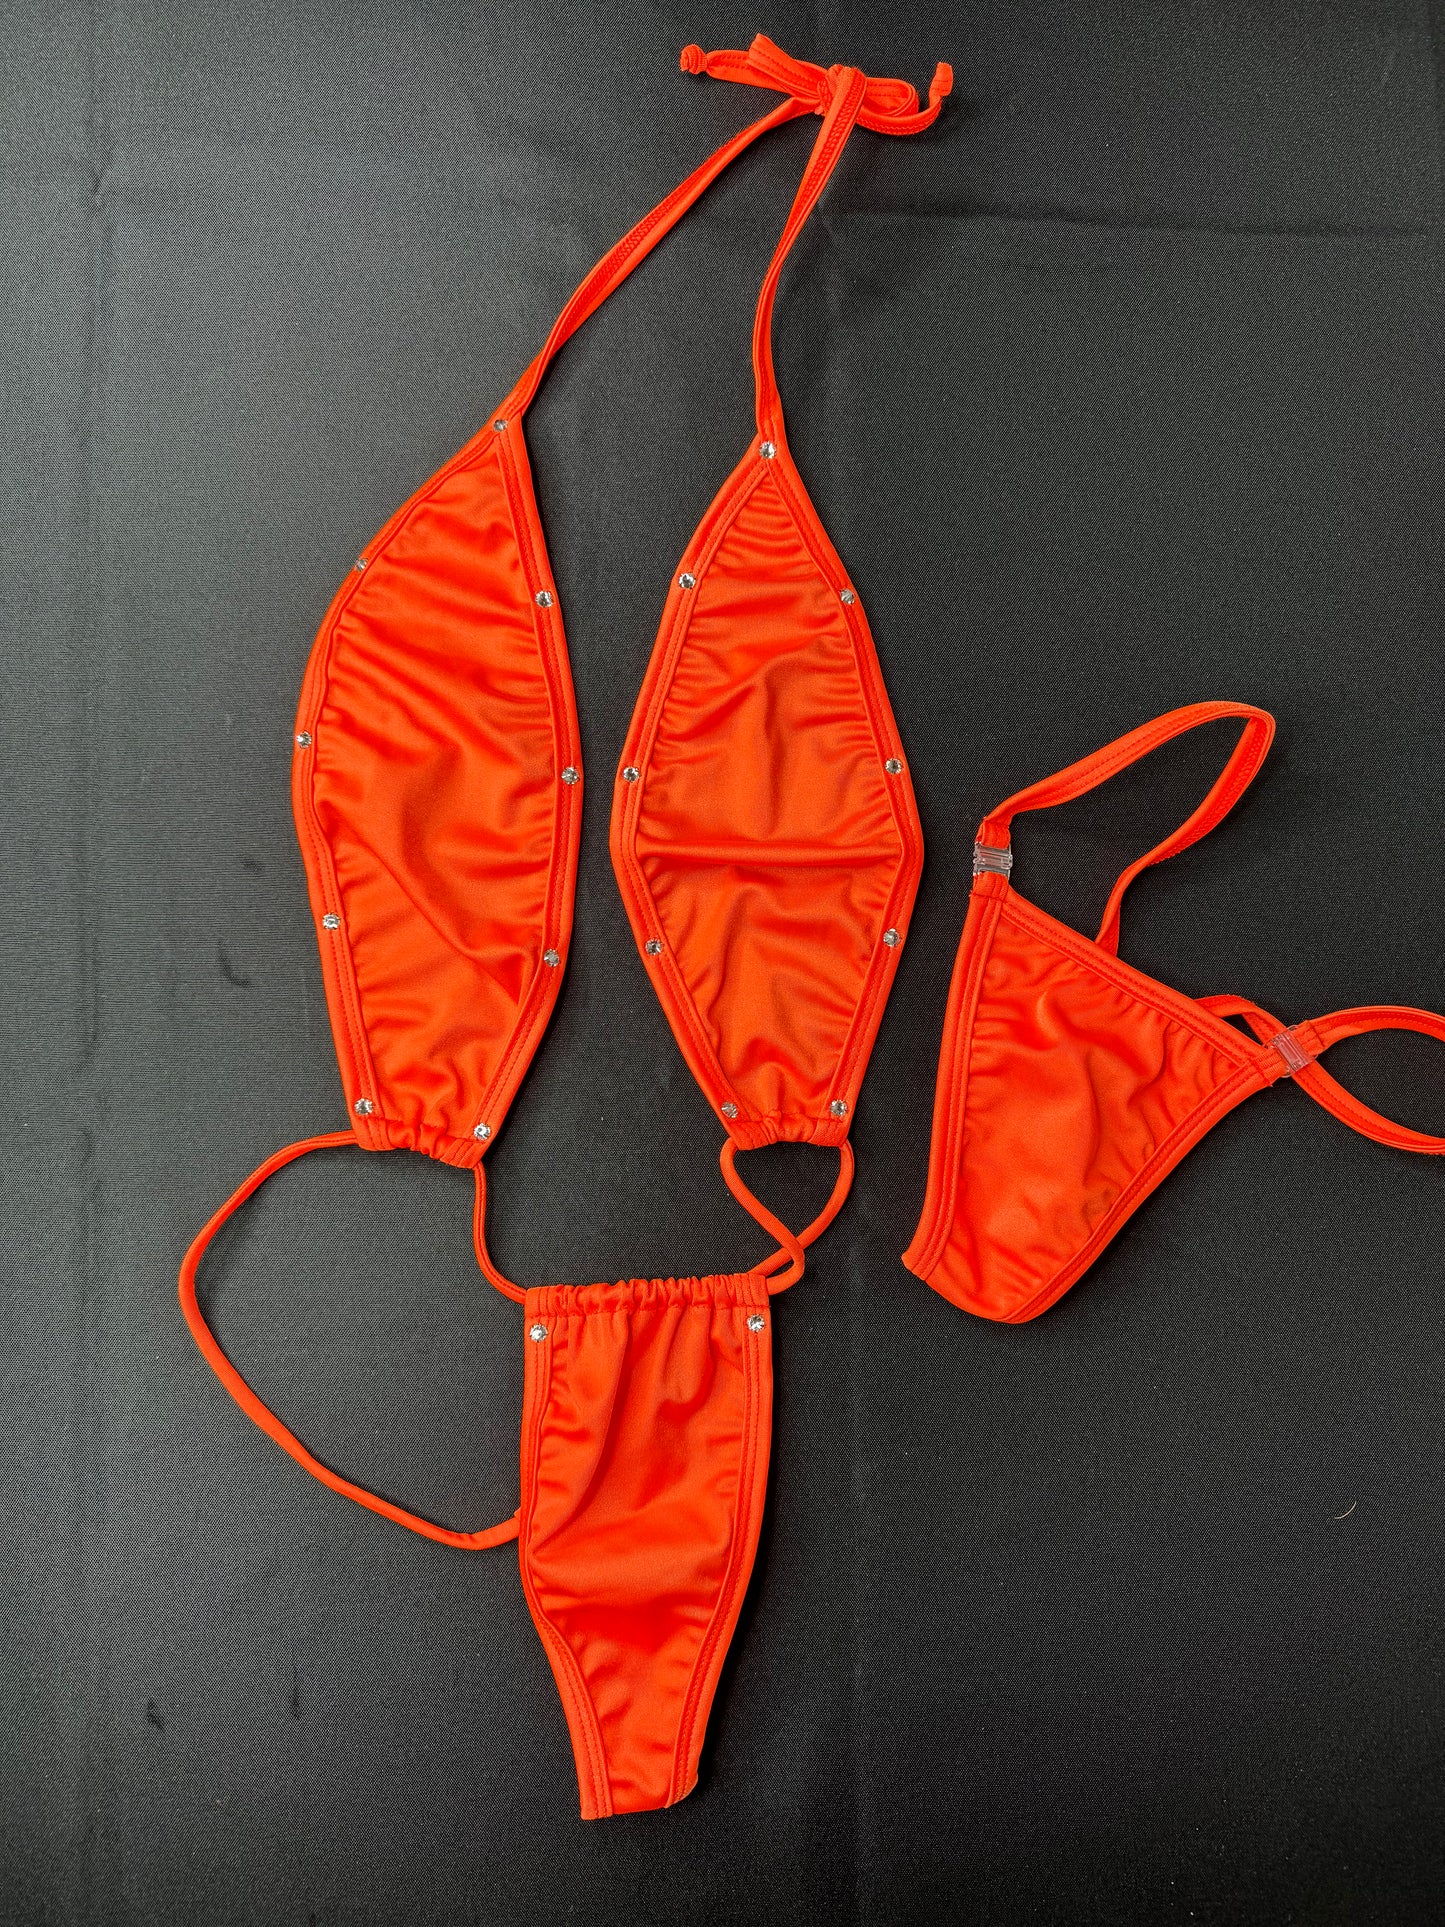 Orange Slingshot Stripper Outfit